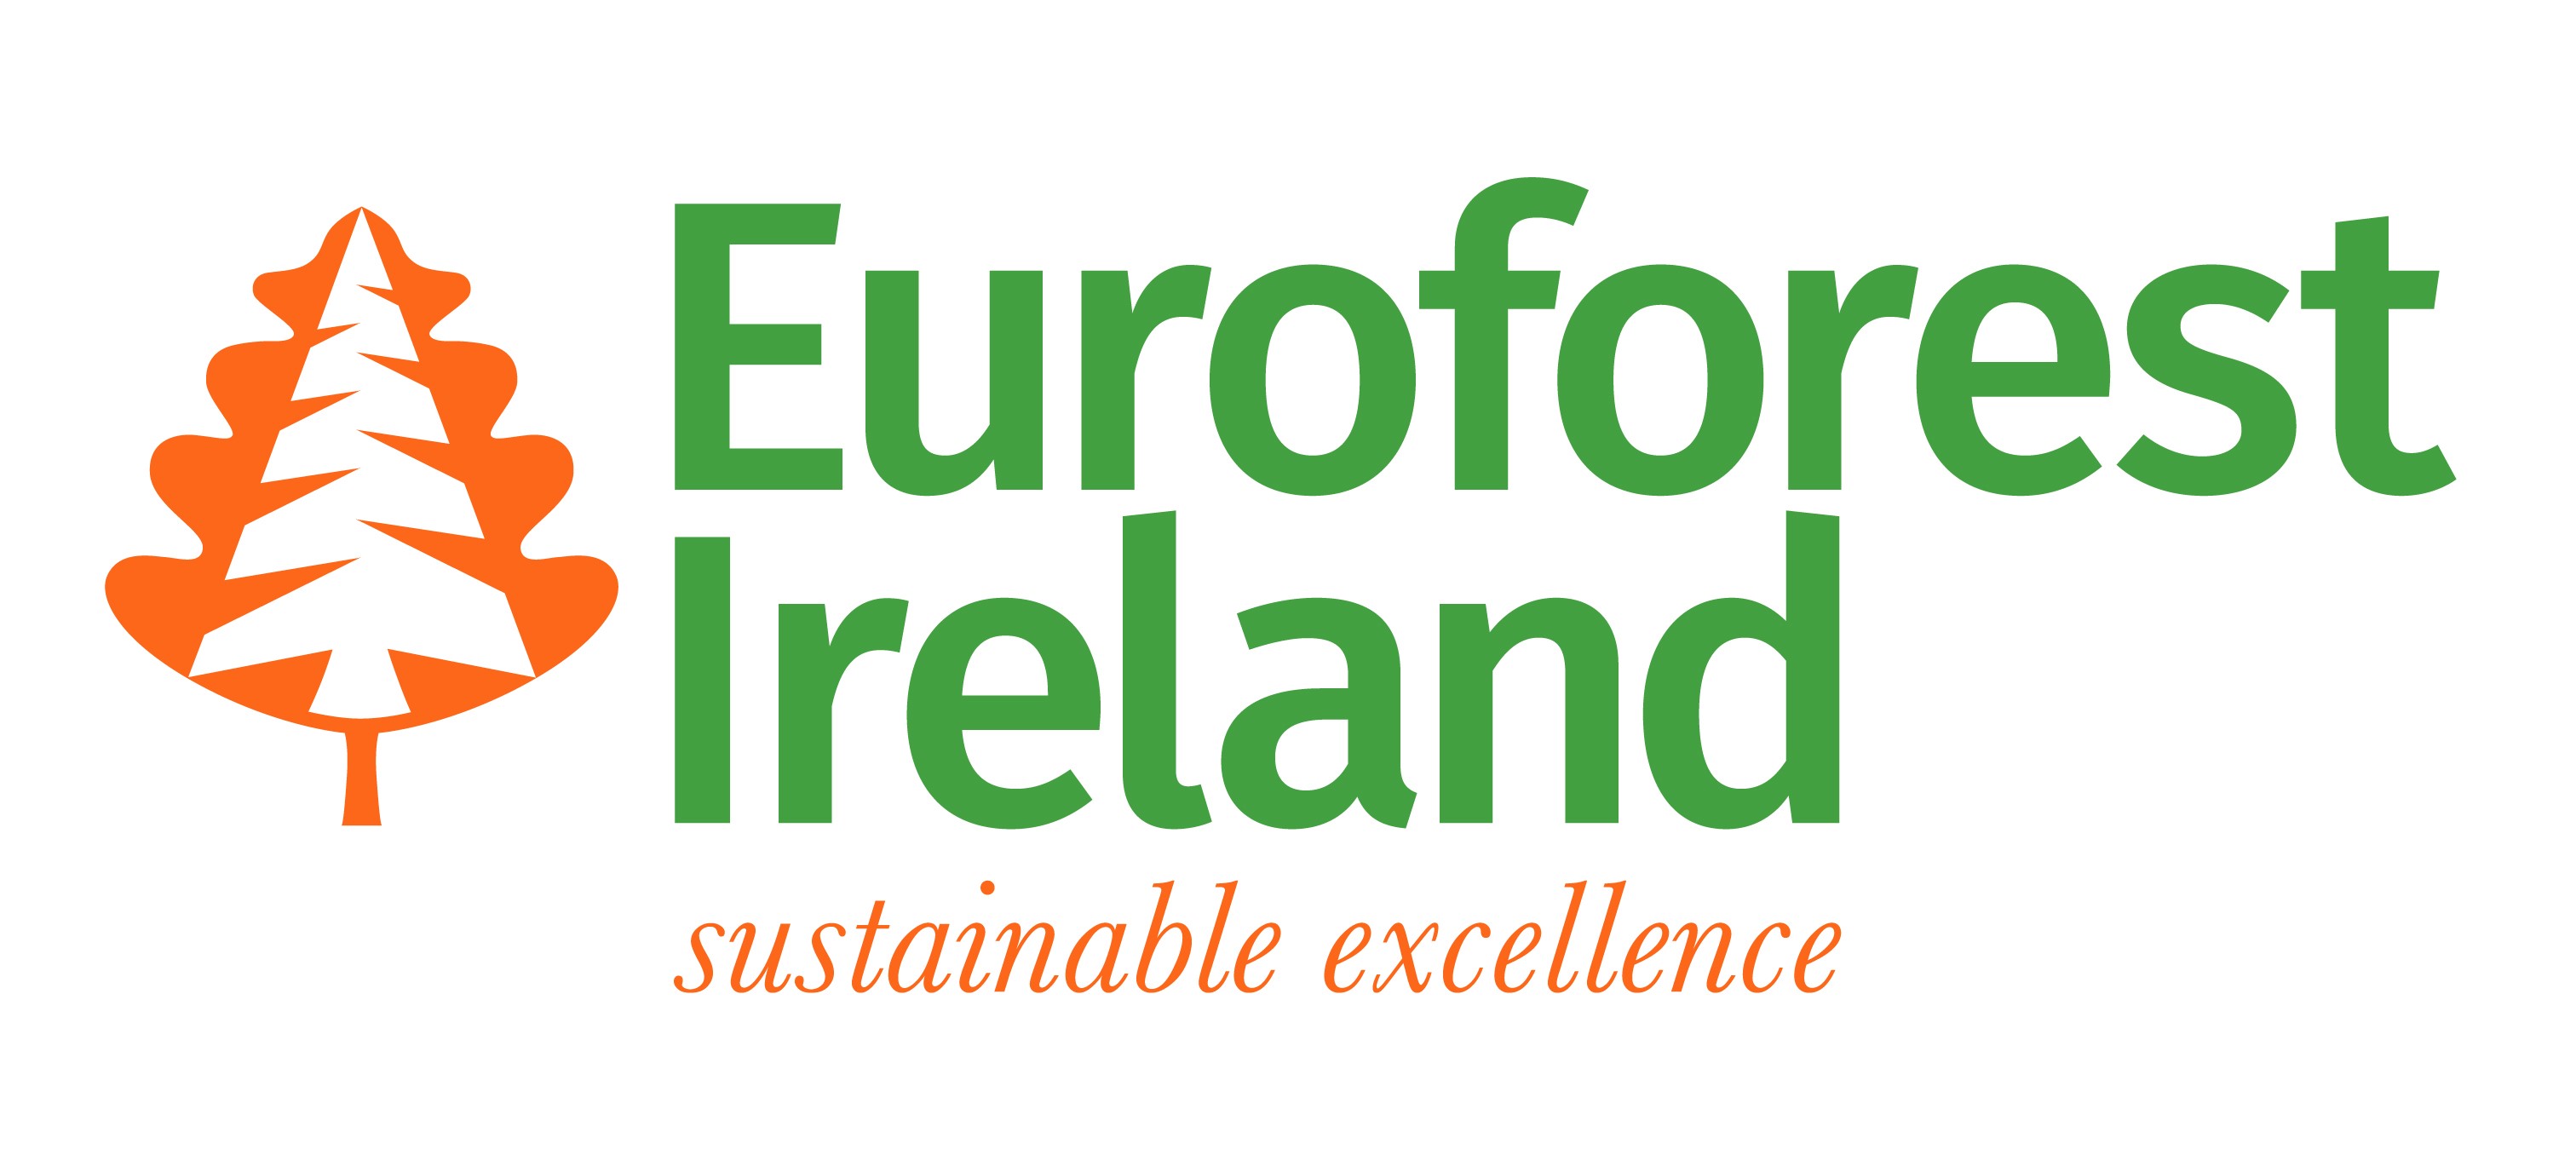 Euroforest Ireland